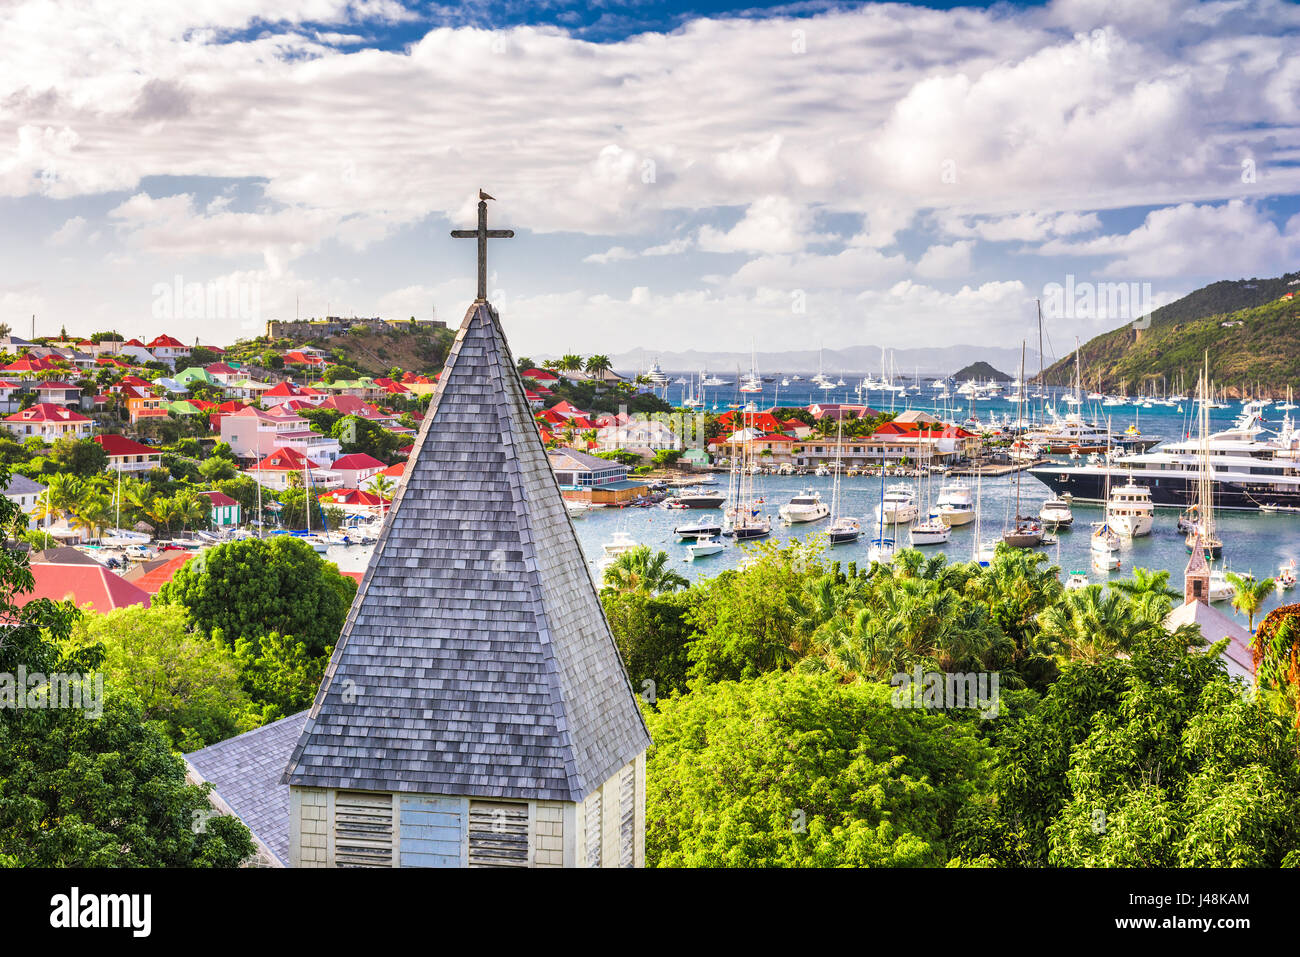 Saint Barthelemy Antilles Vue de derrière l'église anglicane Saint Barthelemy. Banque D'Images